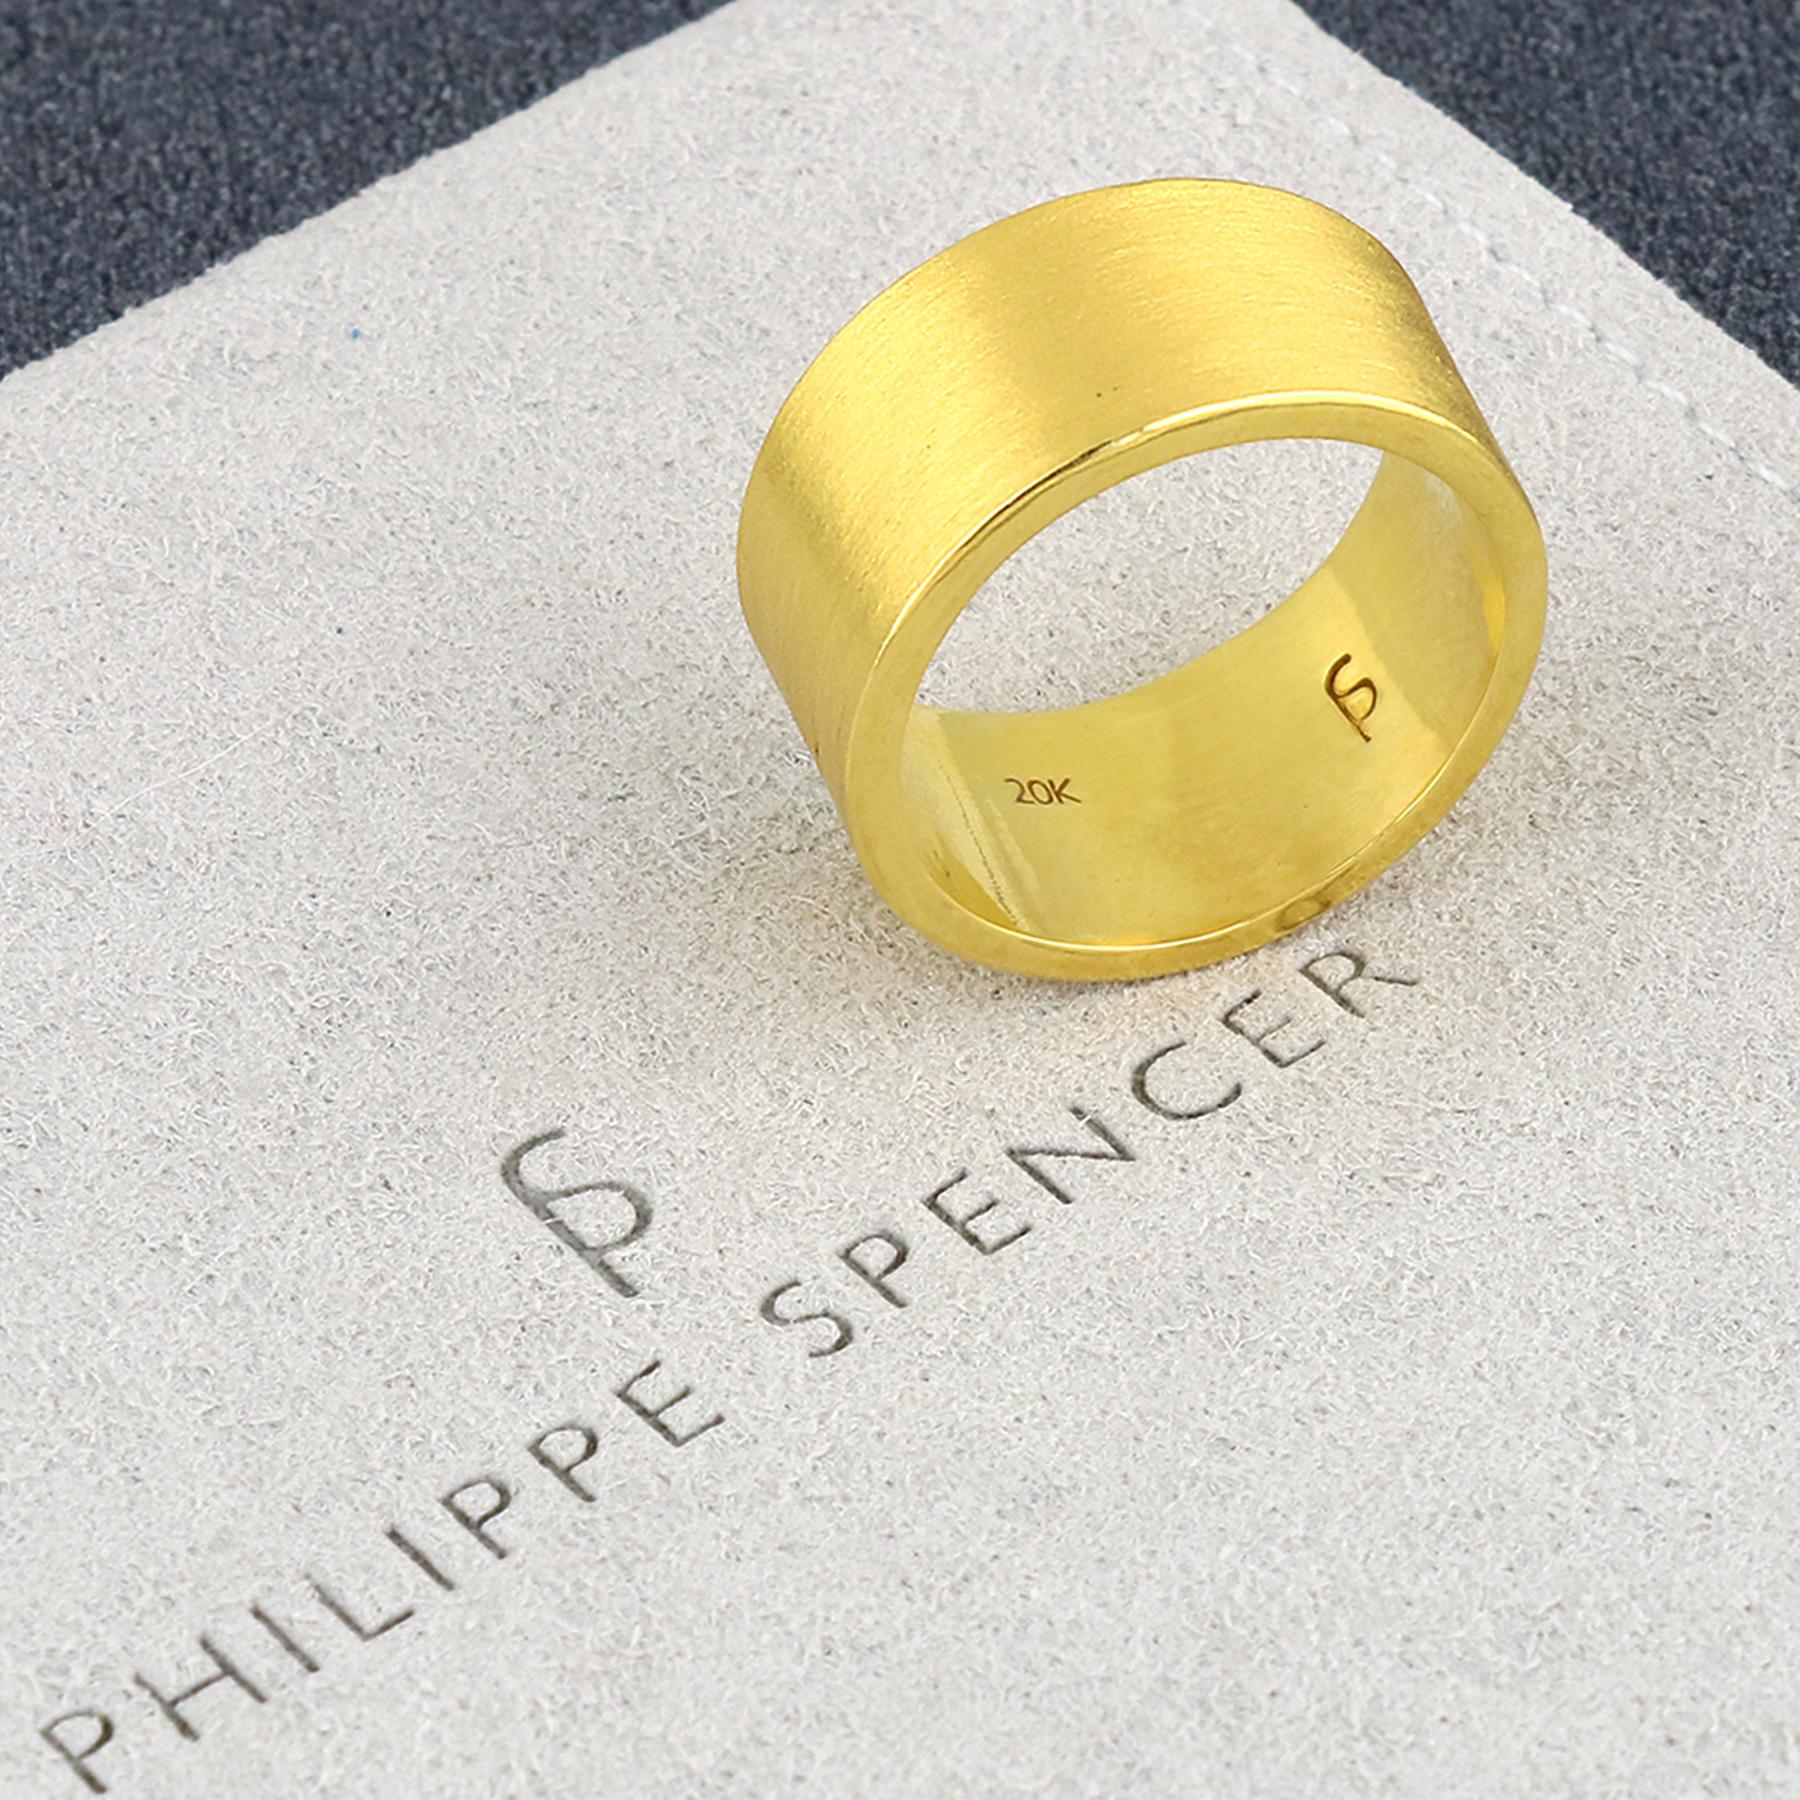 PHILIPPE-SPENCER - 10 x 1,5 mm massives, handgeschmiedetes Statement-Band aus 20 Karat Gold. Außen stark mattiert, innen spiegelpoliert.  Jedes ist ein einzigartiges Kunstwerk. Dieses handgefertigte Band aus massivem 20-karätigem Gold von PHILIPPE